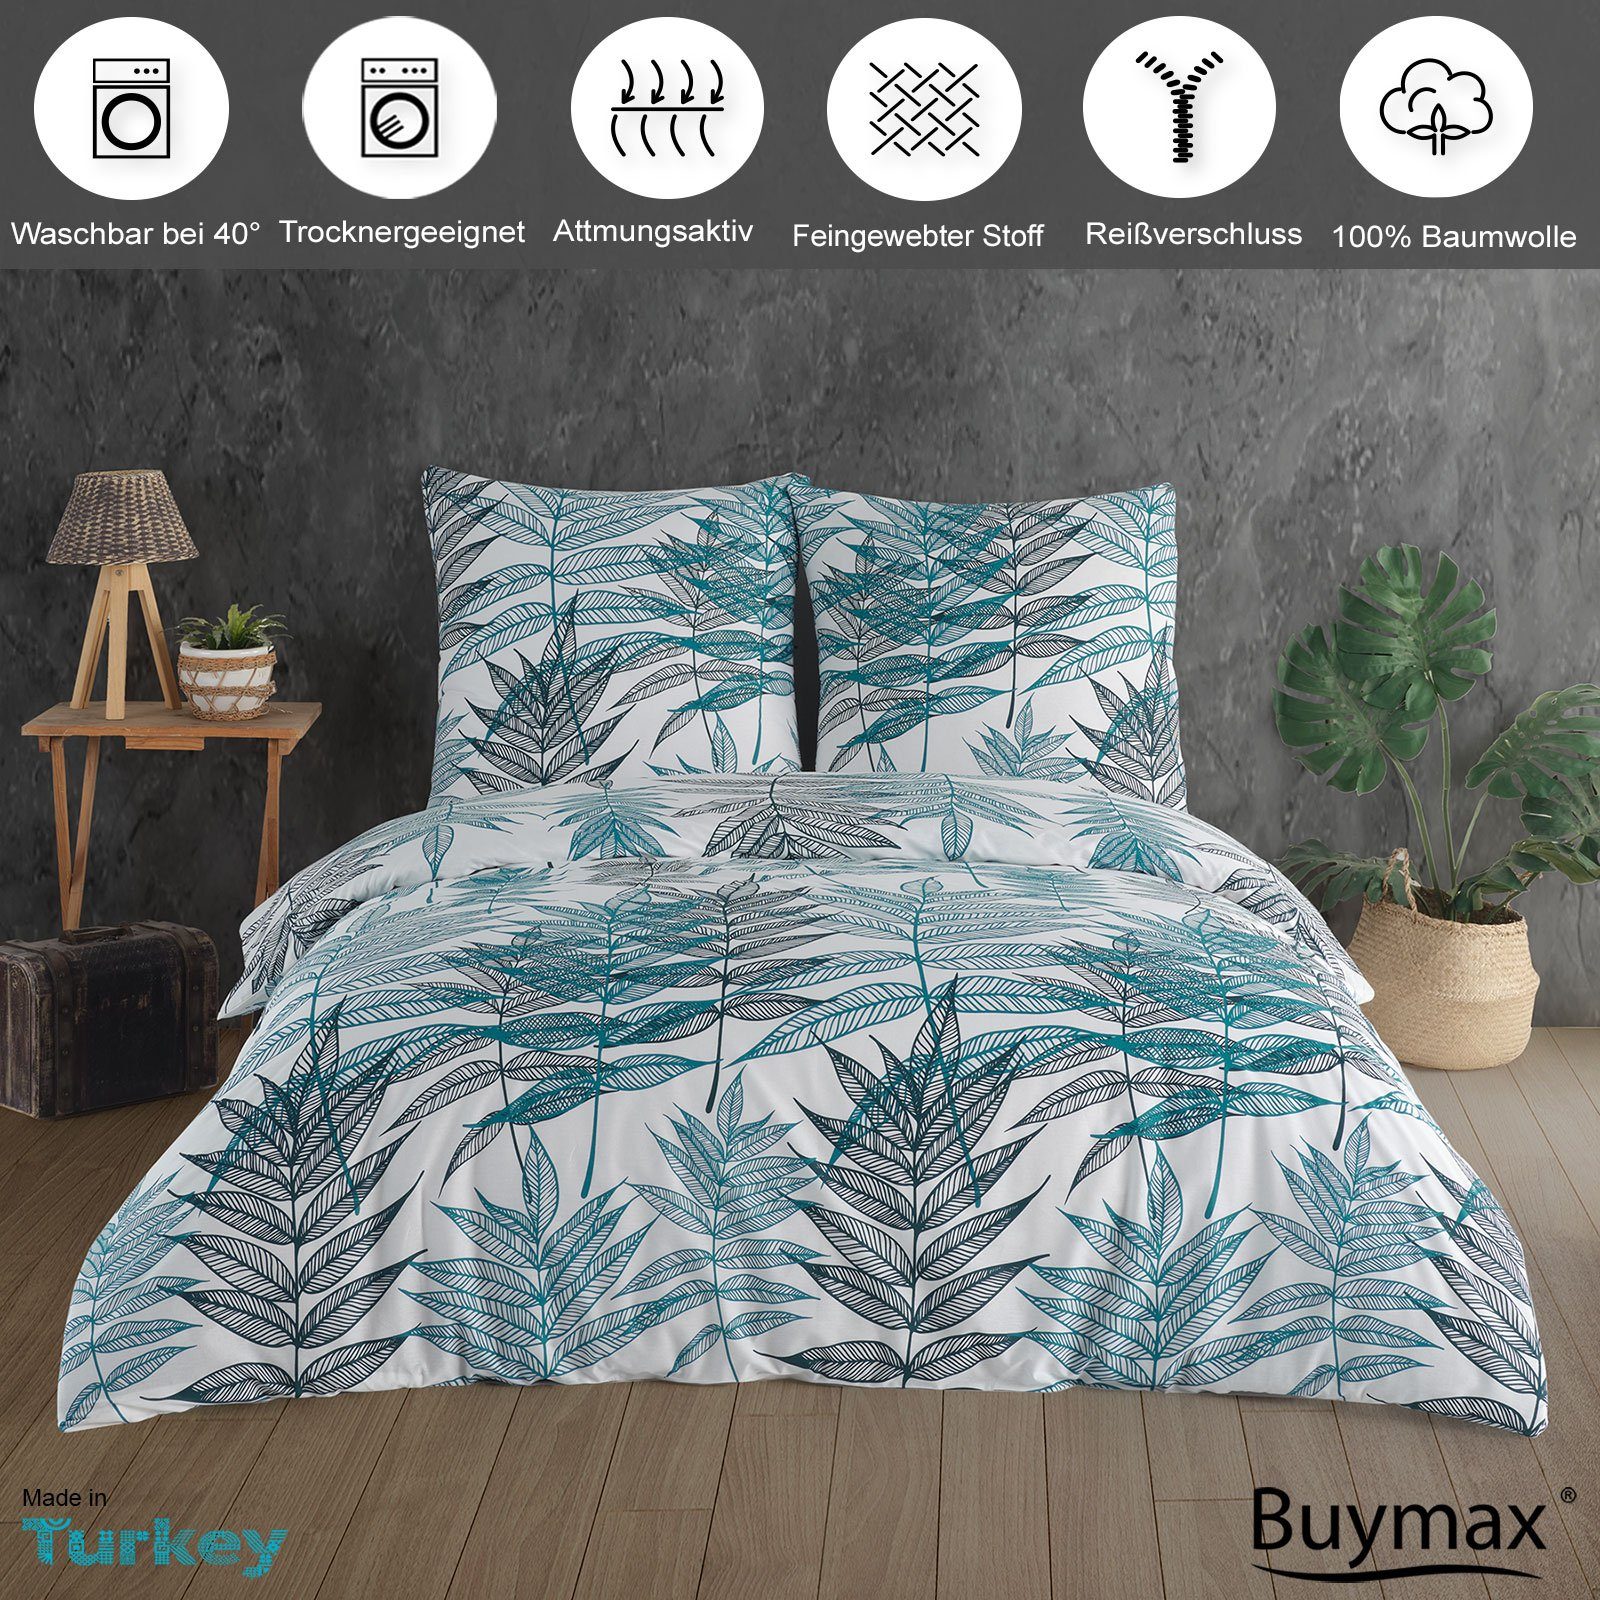 Buymax, Baumwolle 100% 135x200 cm Renforcé, Reißverschluss Qualität 2 Bettwäsche, teilig, Bettwäsche-Set mit